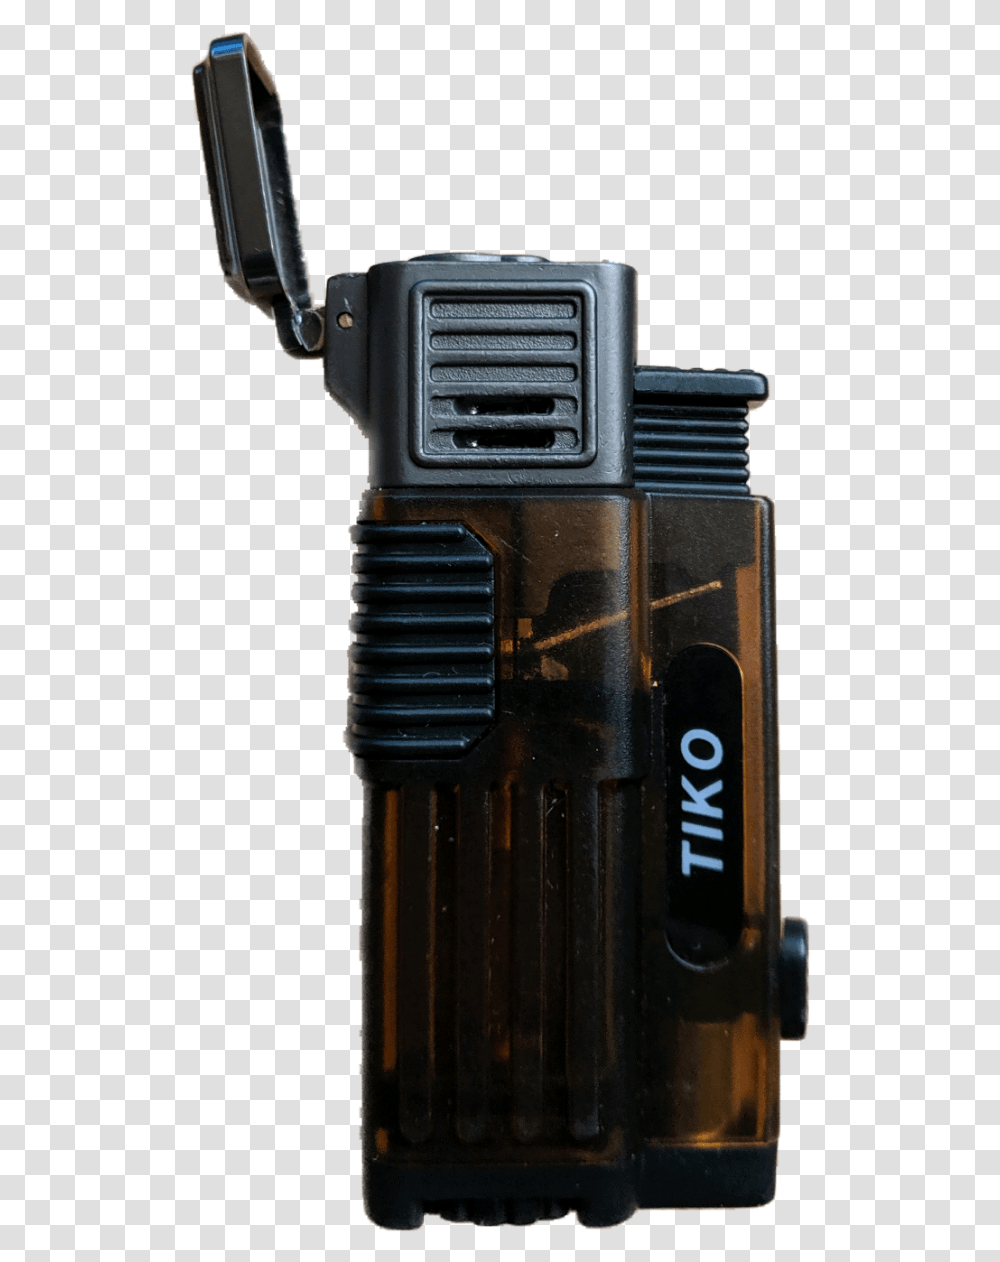 Tiko 3 Flame Refillable Butane Jet Lighter Airsoft Gun, Camera, Electronics, Machine, Projector Transparent Png